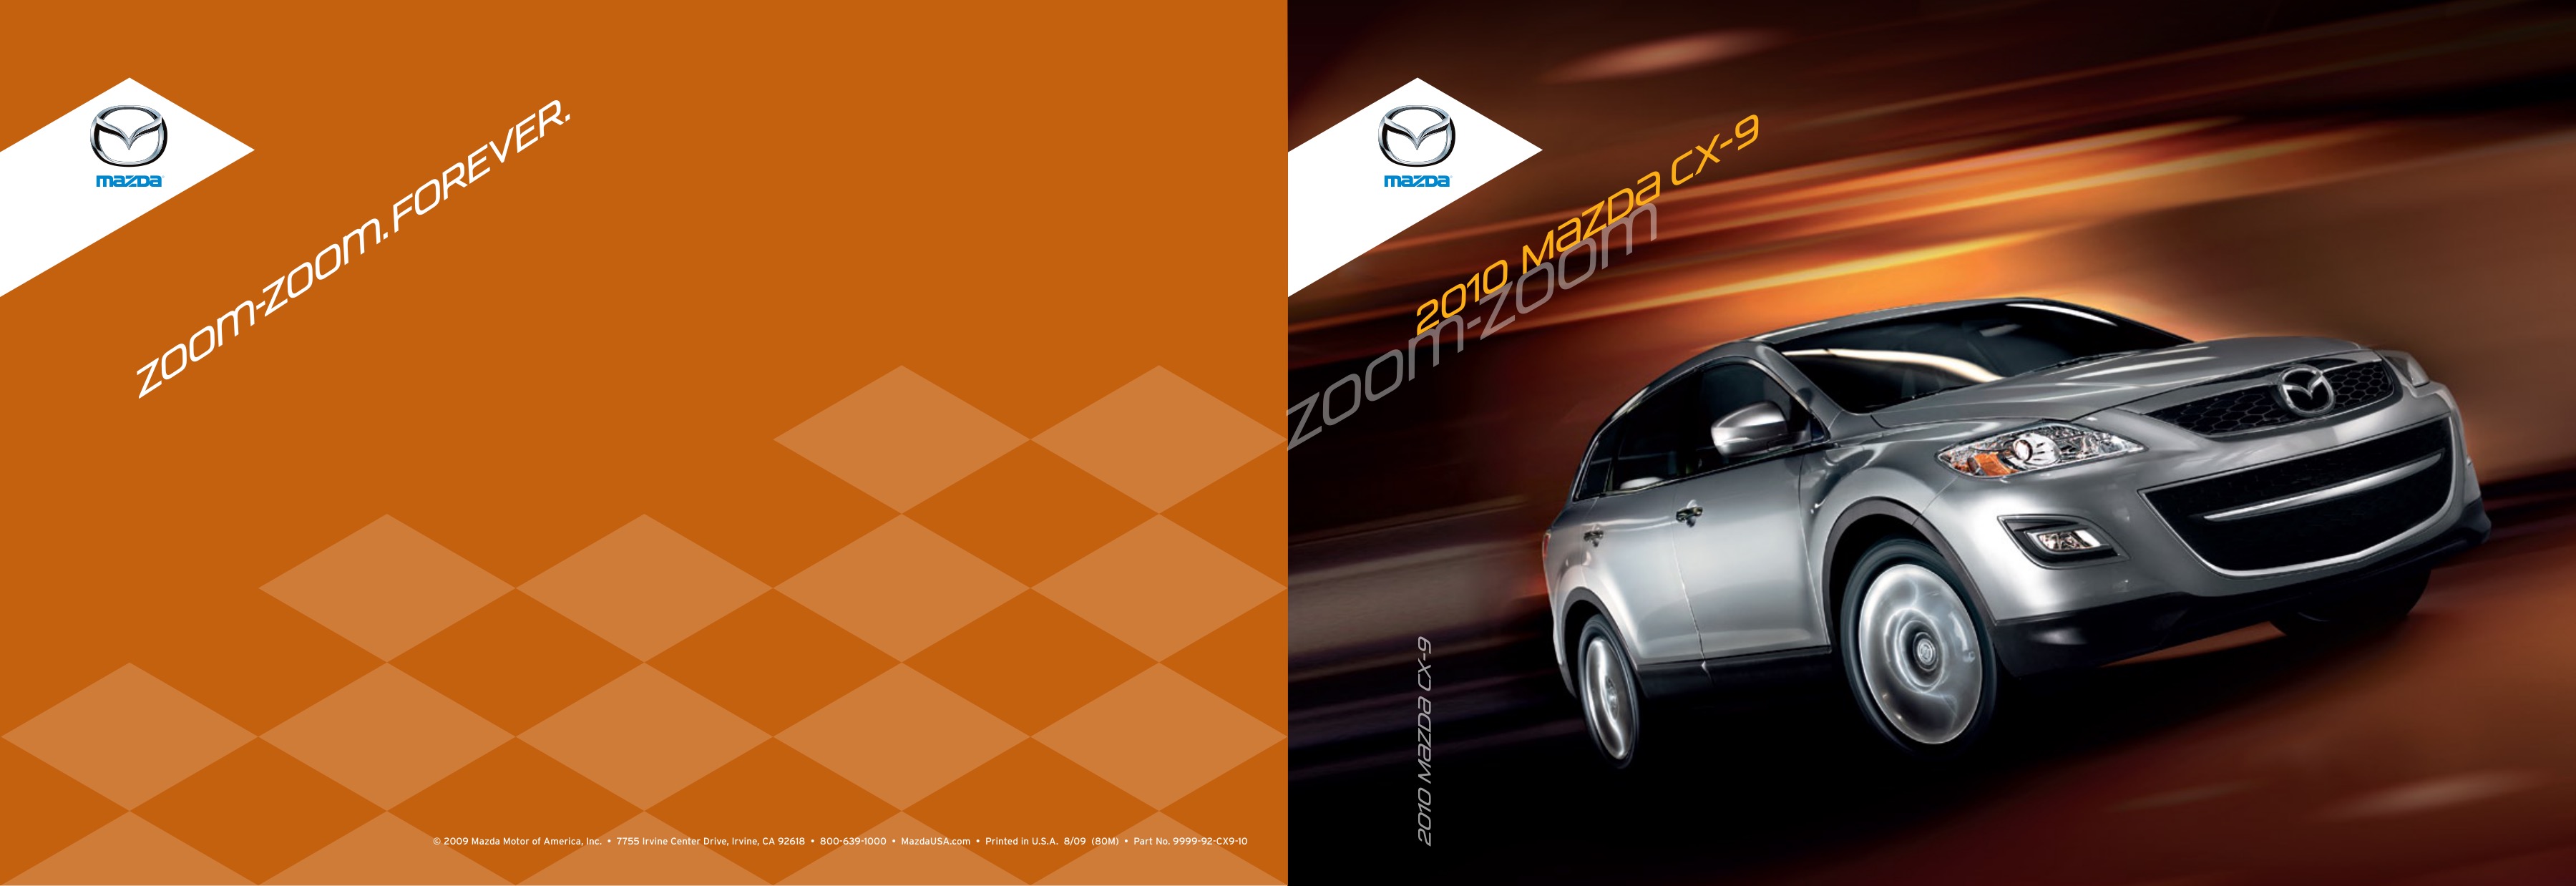 2010 Mazda CX-9 Brochure